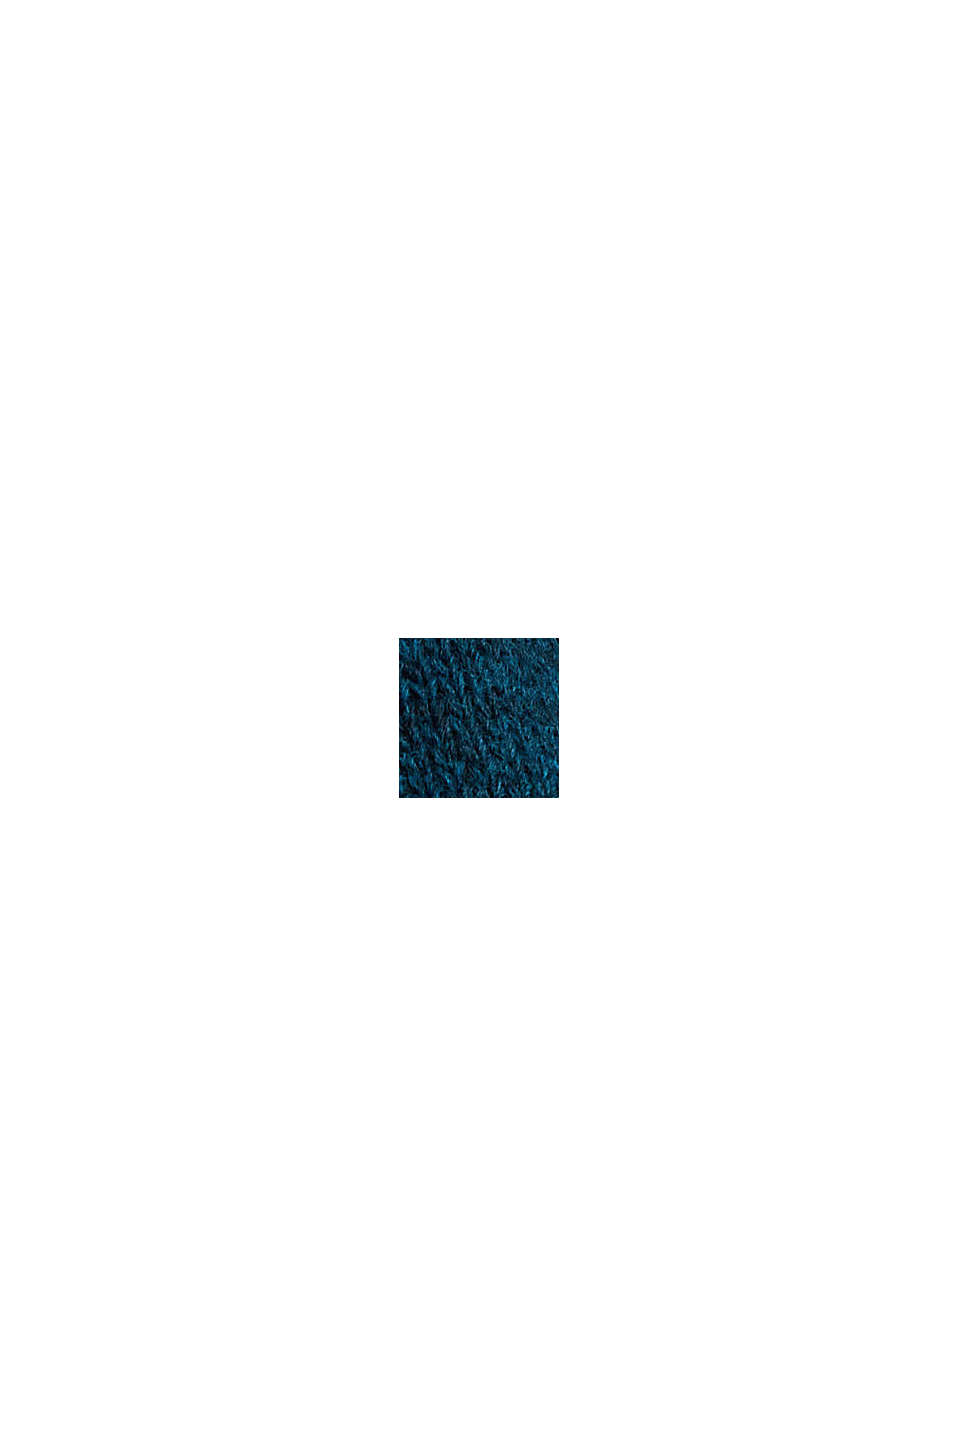 S alpakou: otevřený kardigan s kapsami, PETROL BLUE, swatch